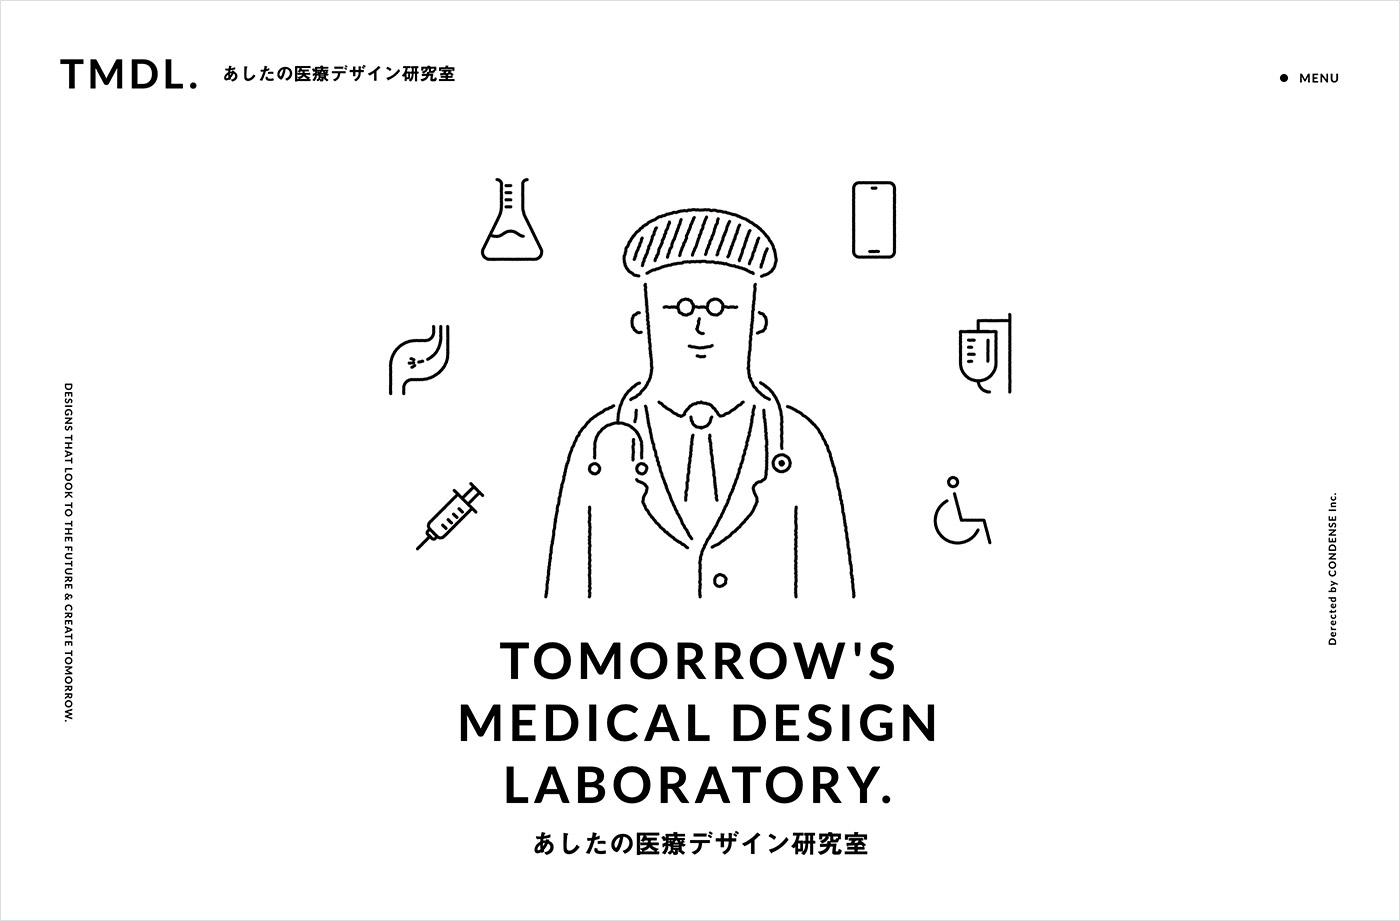 あしたの医療デザイン研究室ウェブサイトの画面キャプチャ画像